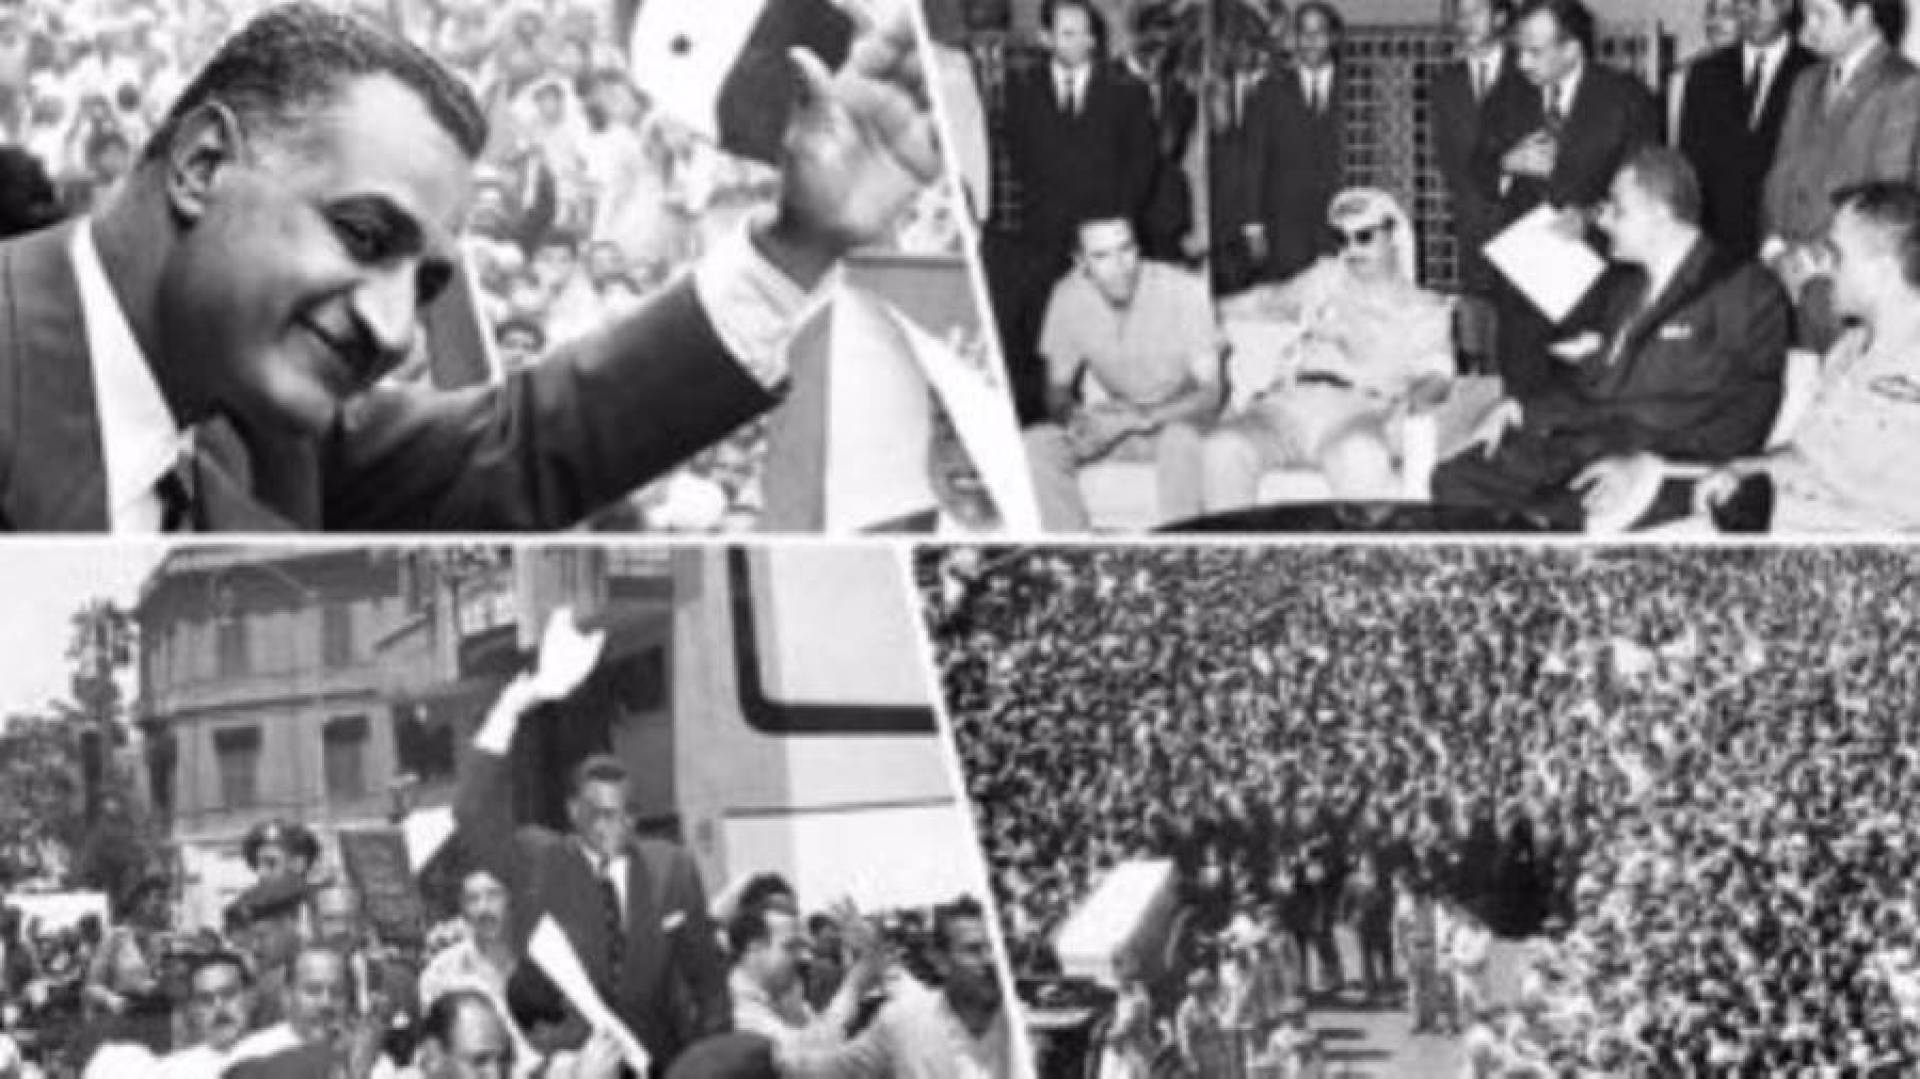 في مثل هذا اليوم قبل إثنان وخمسون عاماً 28 سبتمبر 1970 رحل عن دنيانا الرئيس جمال عبدالناصر رحمه الله